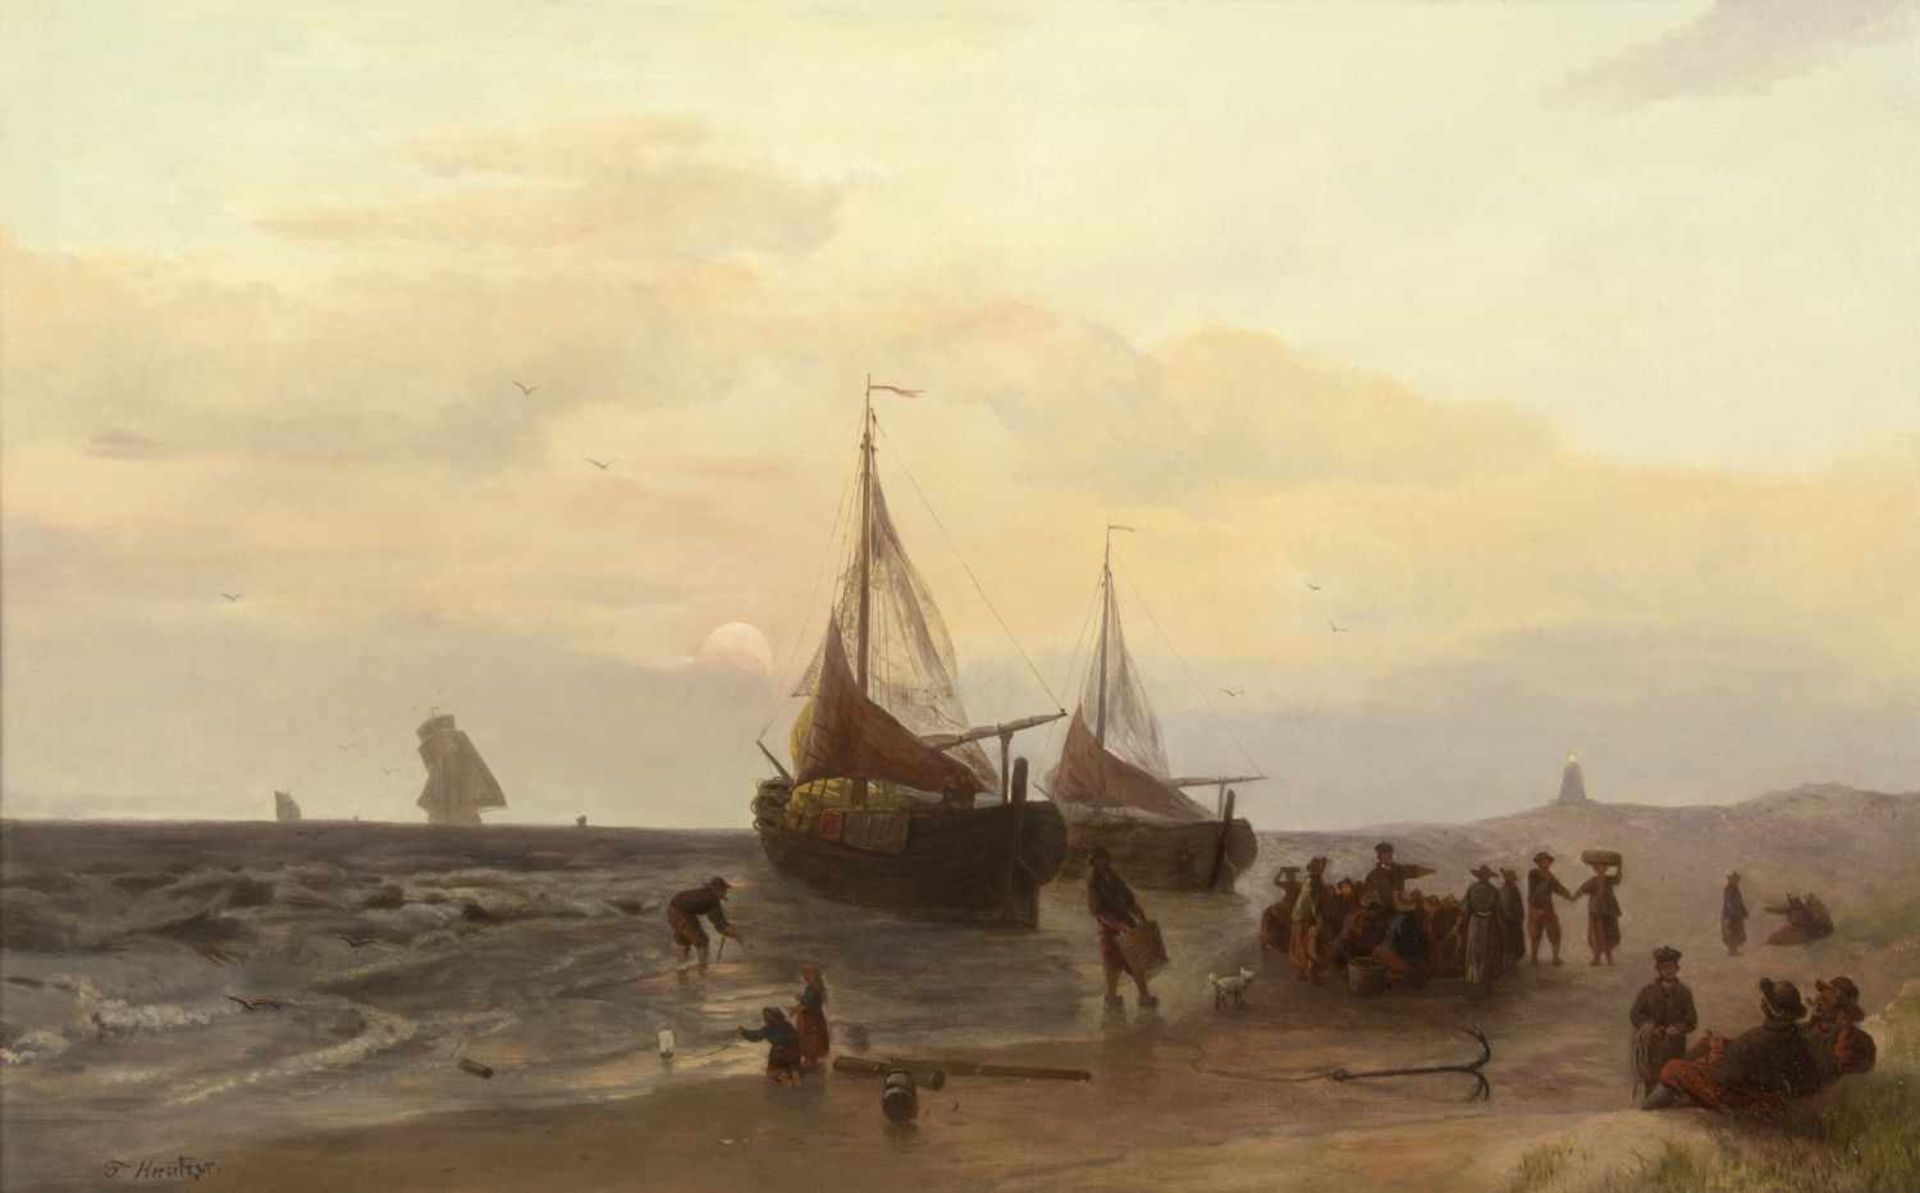 Kreutzer, F.Hafenszene mit Fischerbooten bei Sonnenaufgang. Öl/Lwd., doubliert. Bez. 53 x 82 cm.